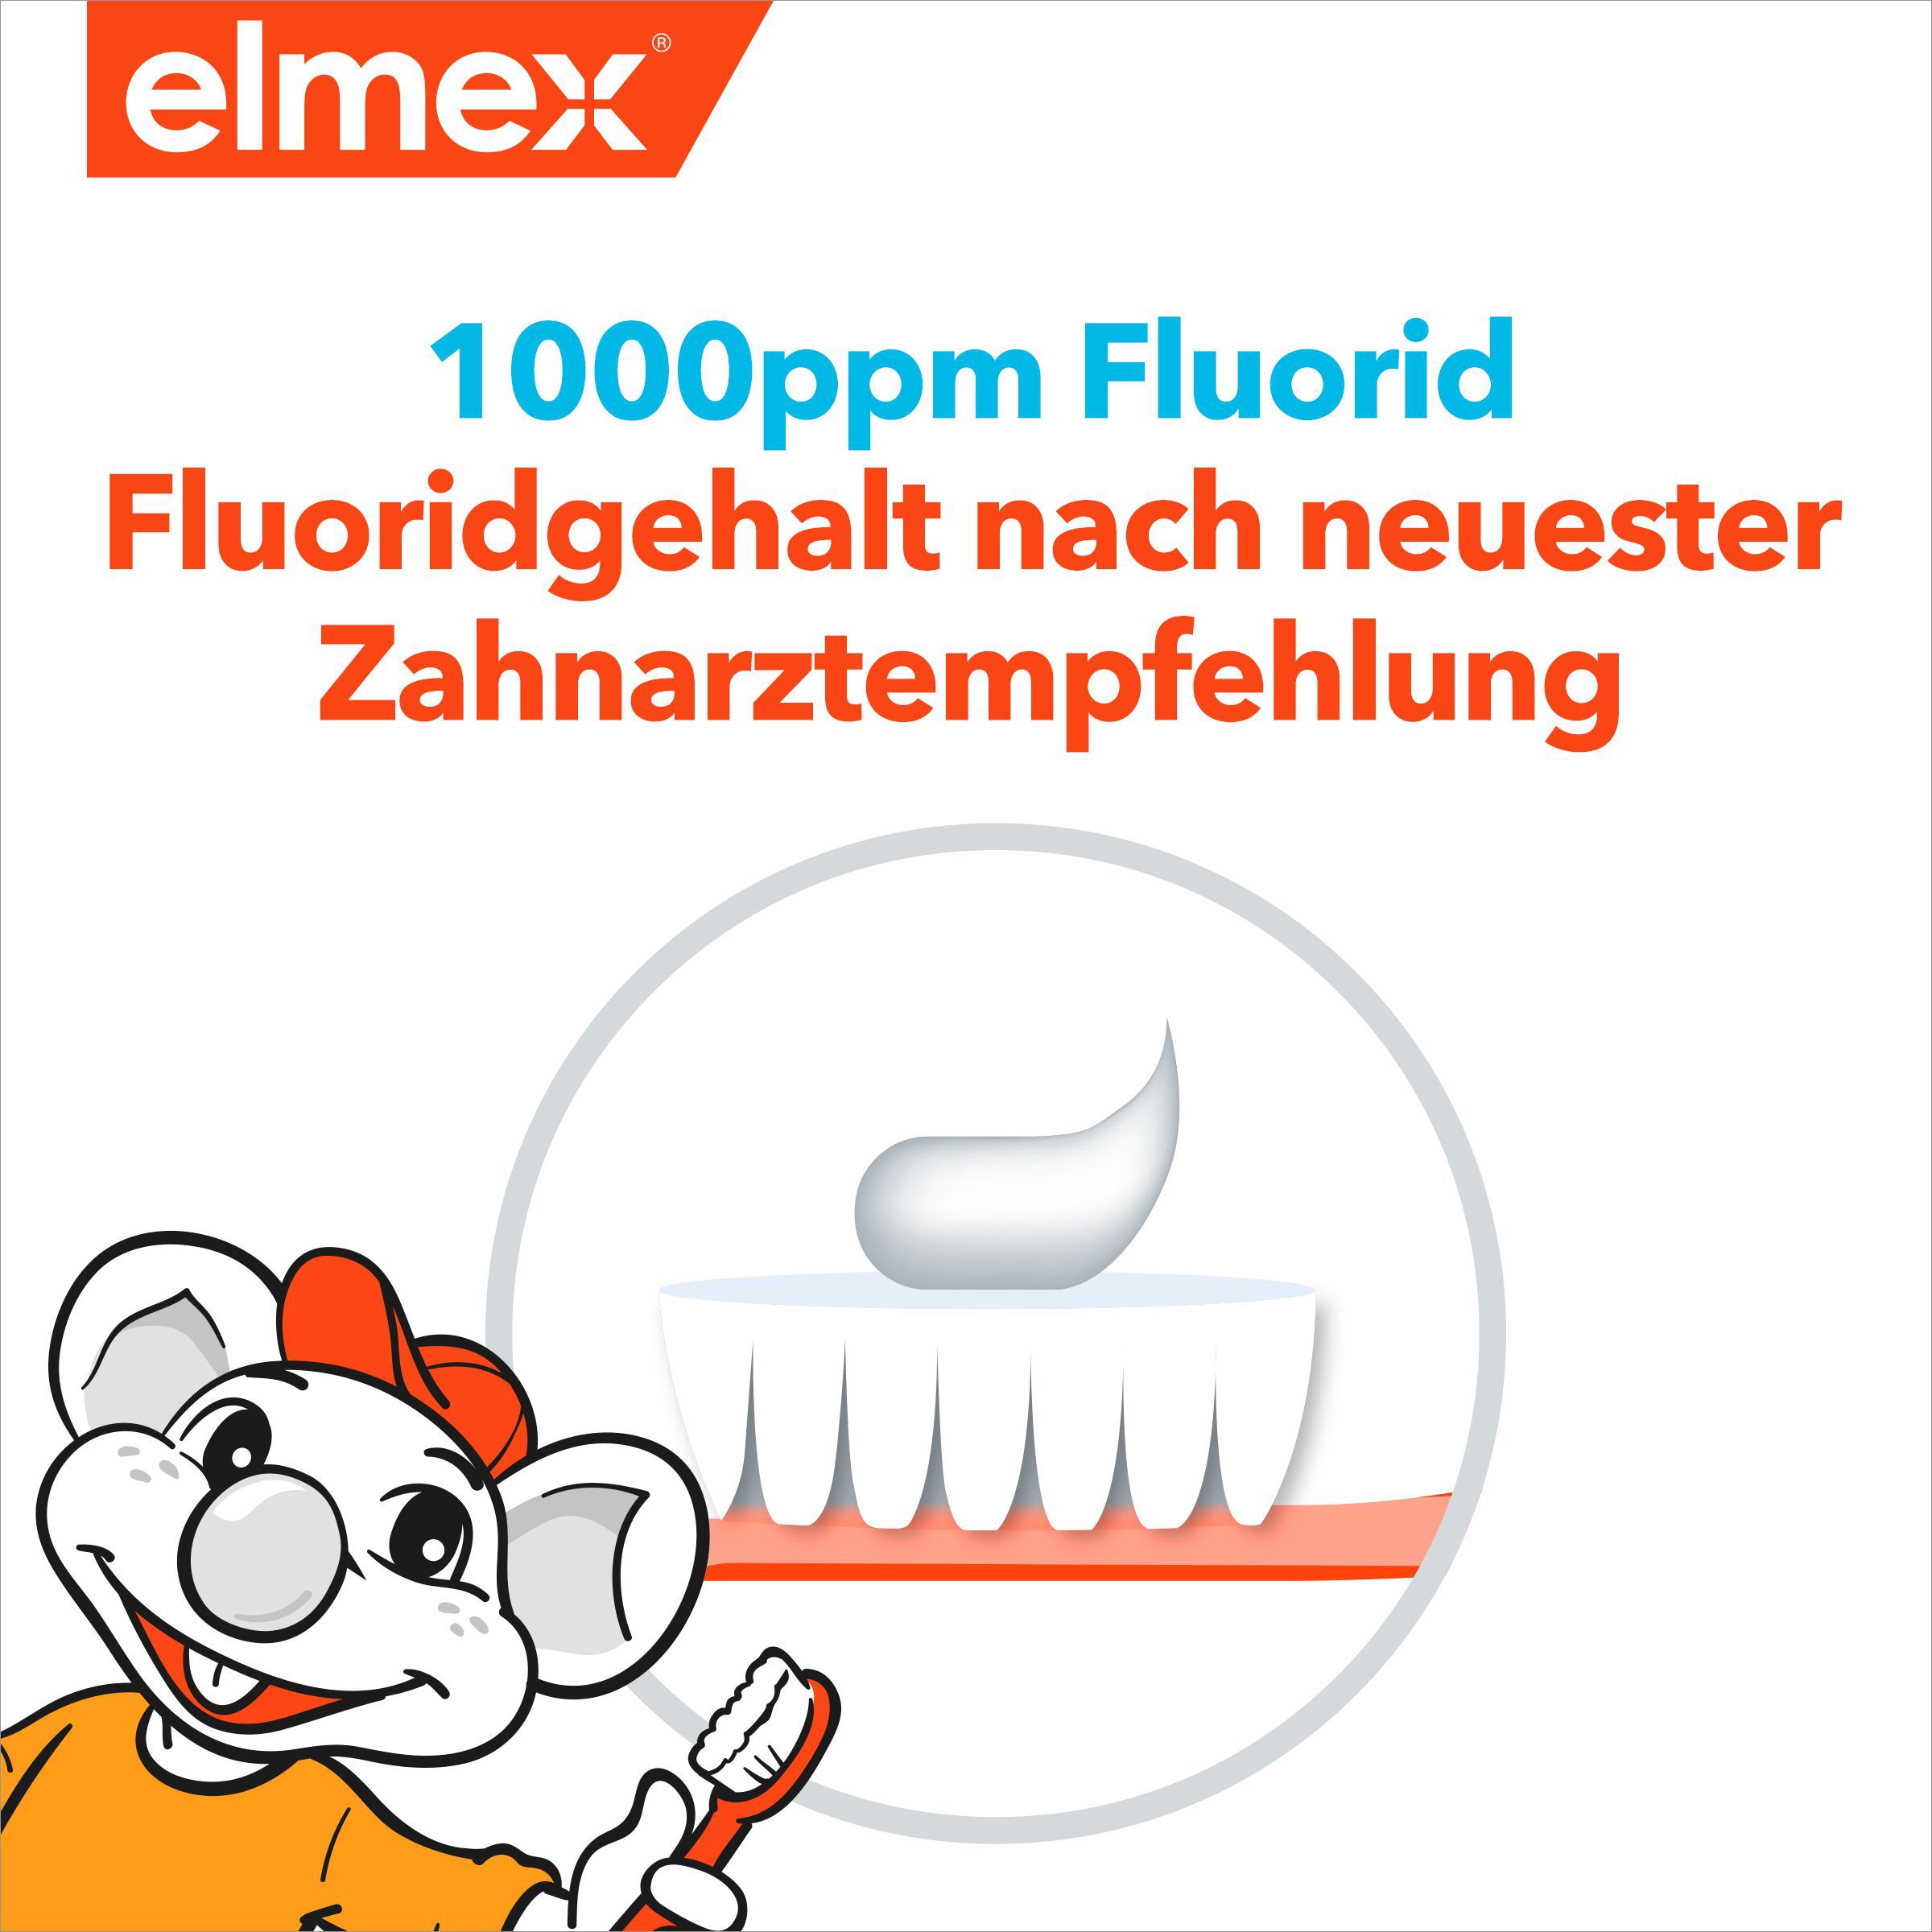 elmex Kinder-Zahnpasta zum Schutz der Milchzähne gegen Karies